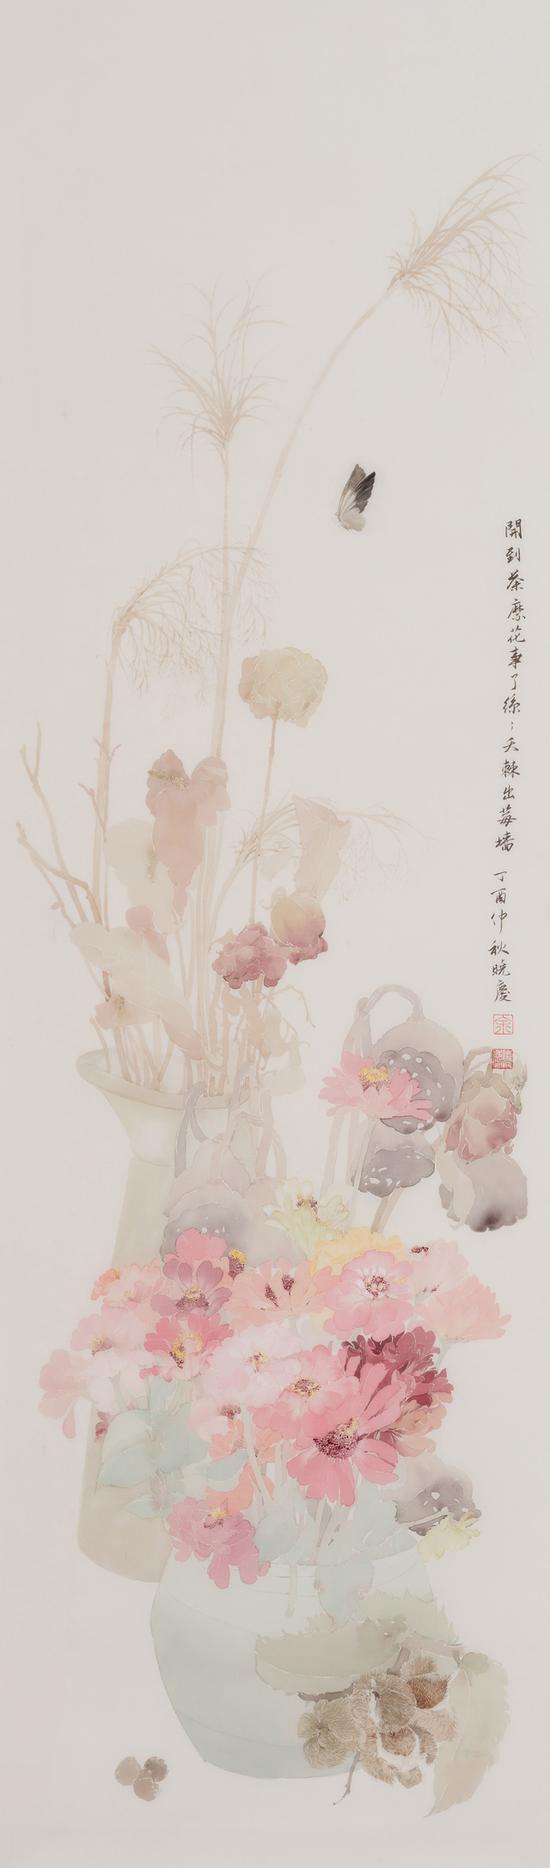 余晓庆，花事阑珊之二，绢本设色，118x36cm，2017